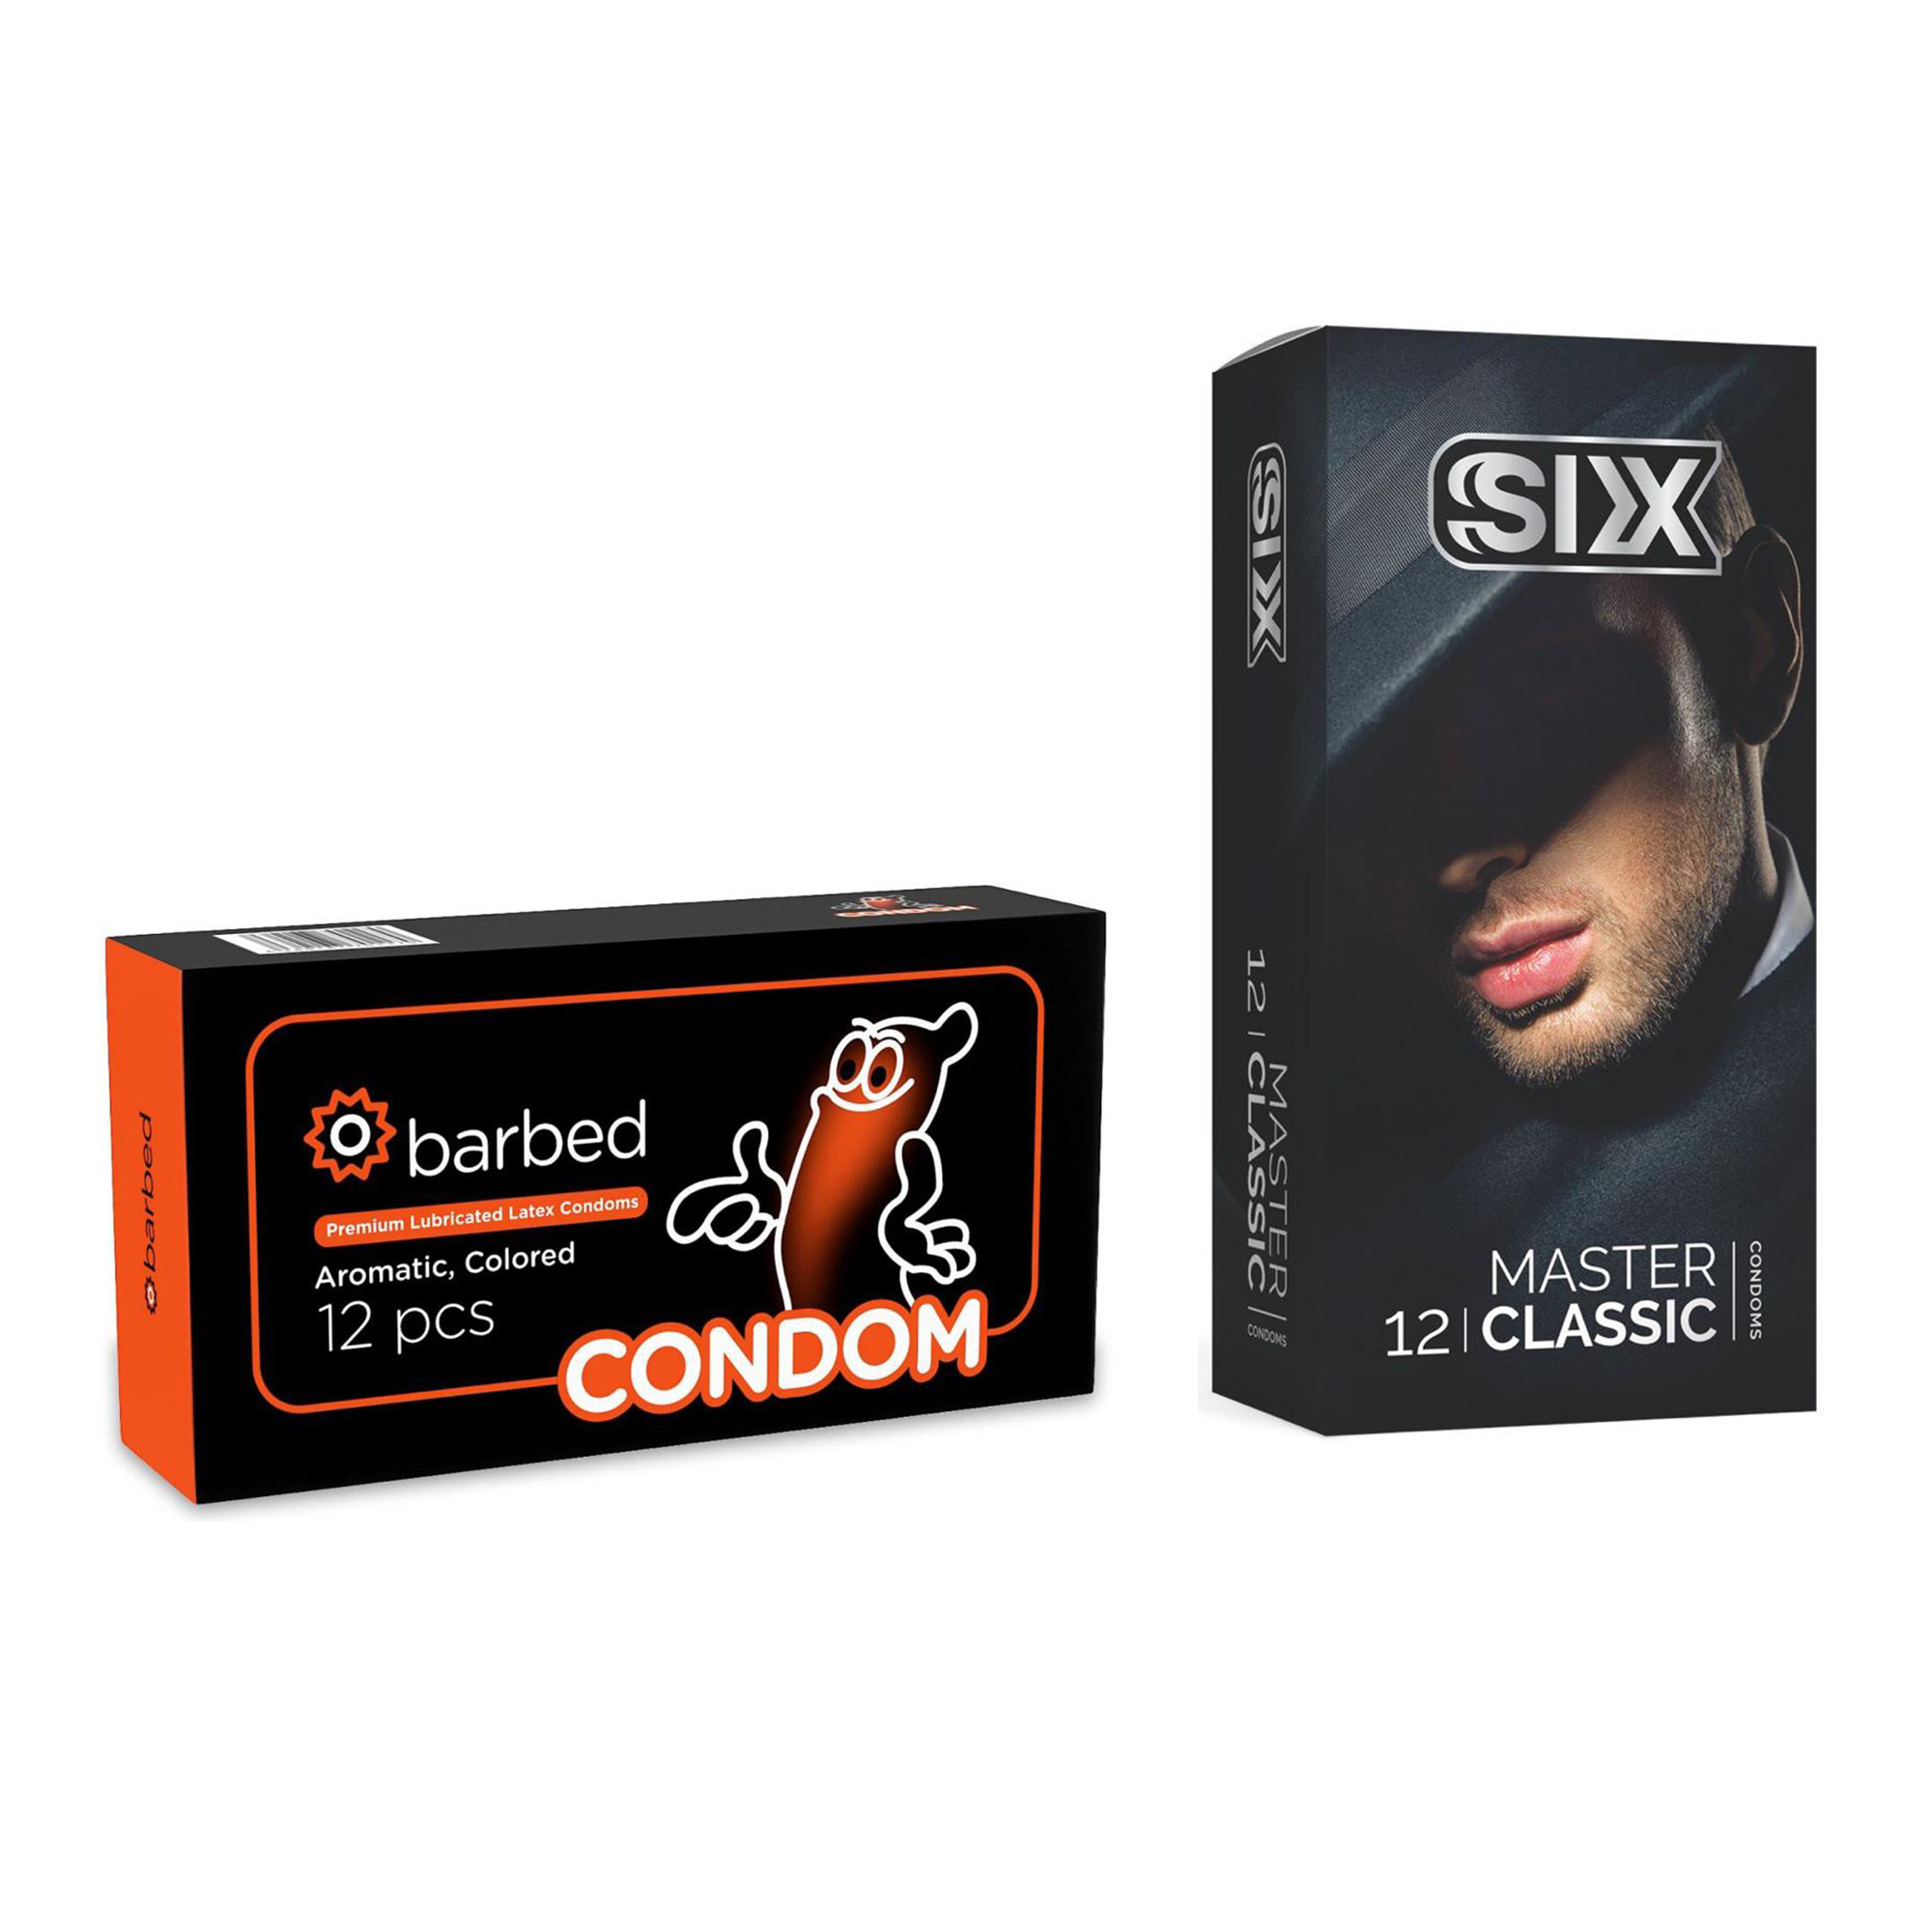 کاندوم سیکس مدل Master Classic بسته 12 عددی به همراه کاندوم کاندوم مدل Barbed بسته 12 عددی